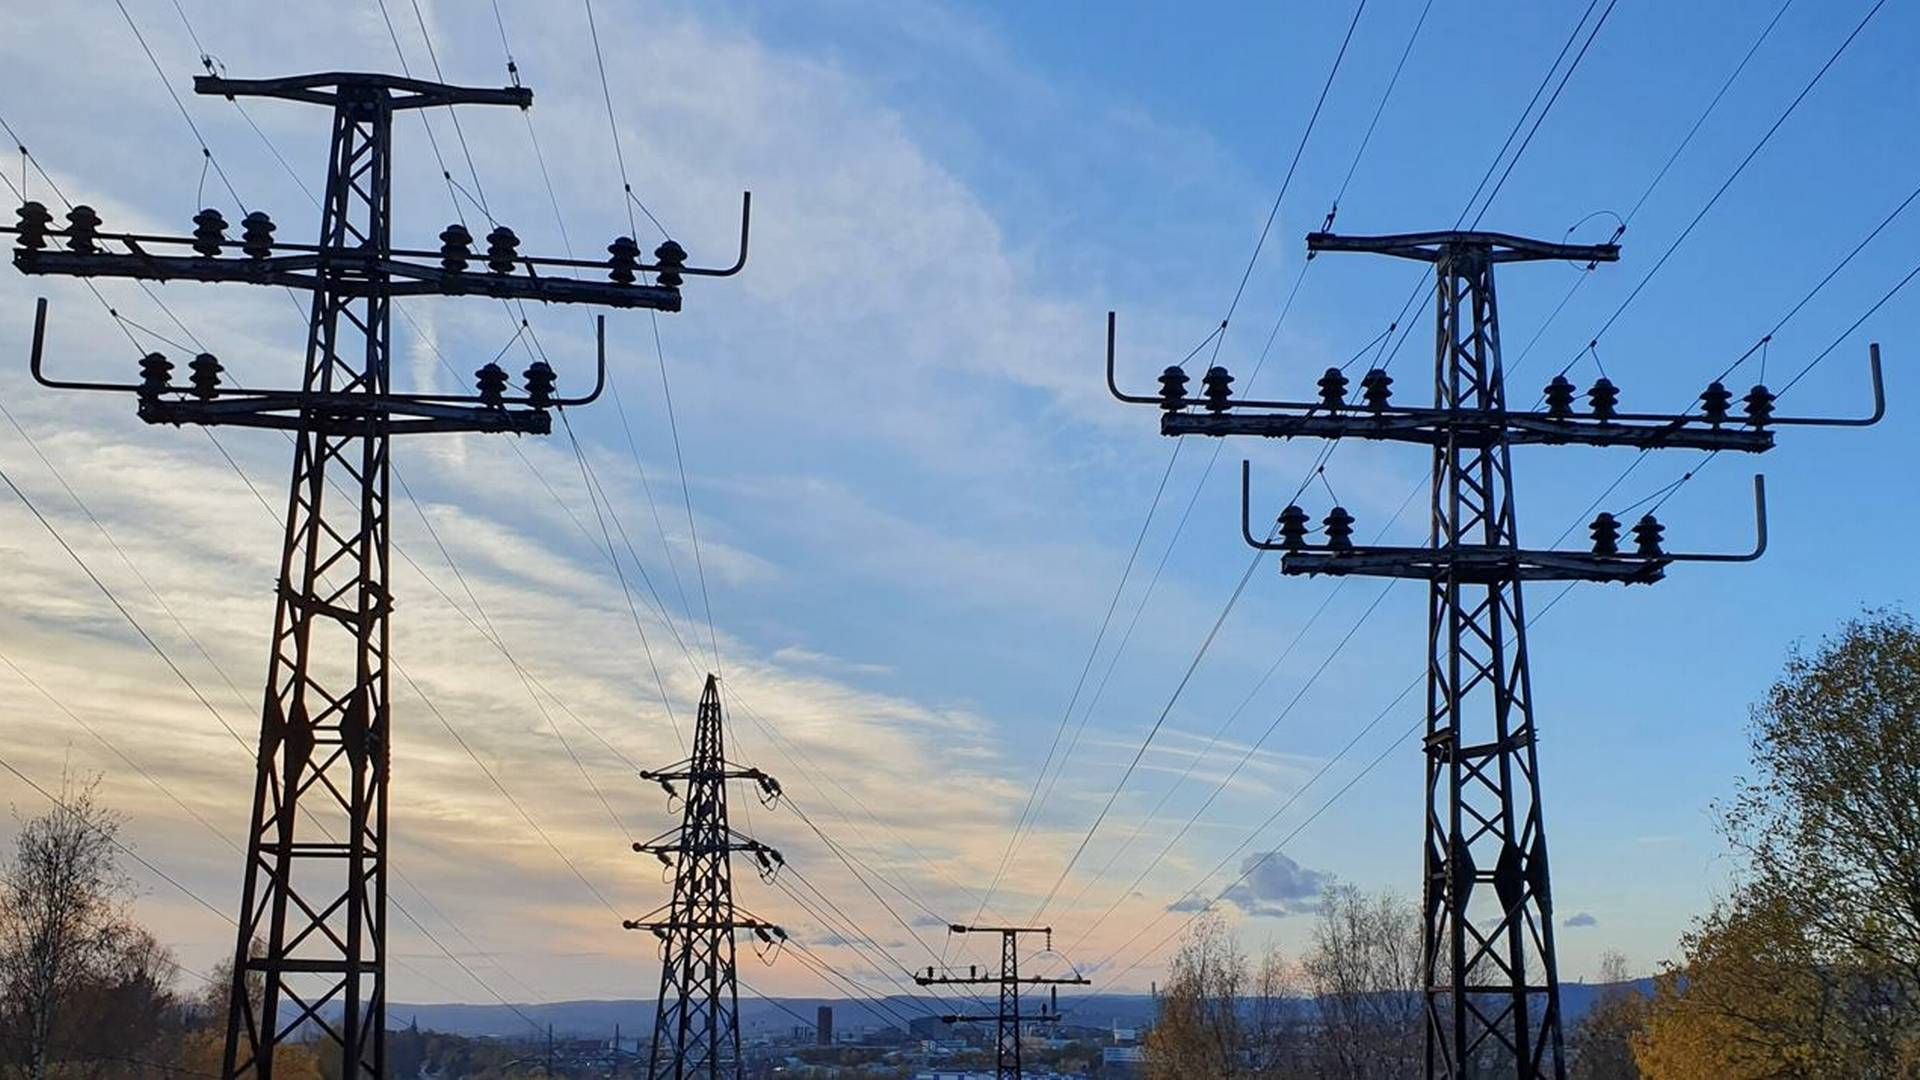 ÅRLIGE NØKKELTALL: Ifølge RME har det norske strømnettet en verdi på 171 milliarder kroner og det ble investert 17 milliarder kroner i det norske strømnettet i løpet av 2021.